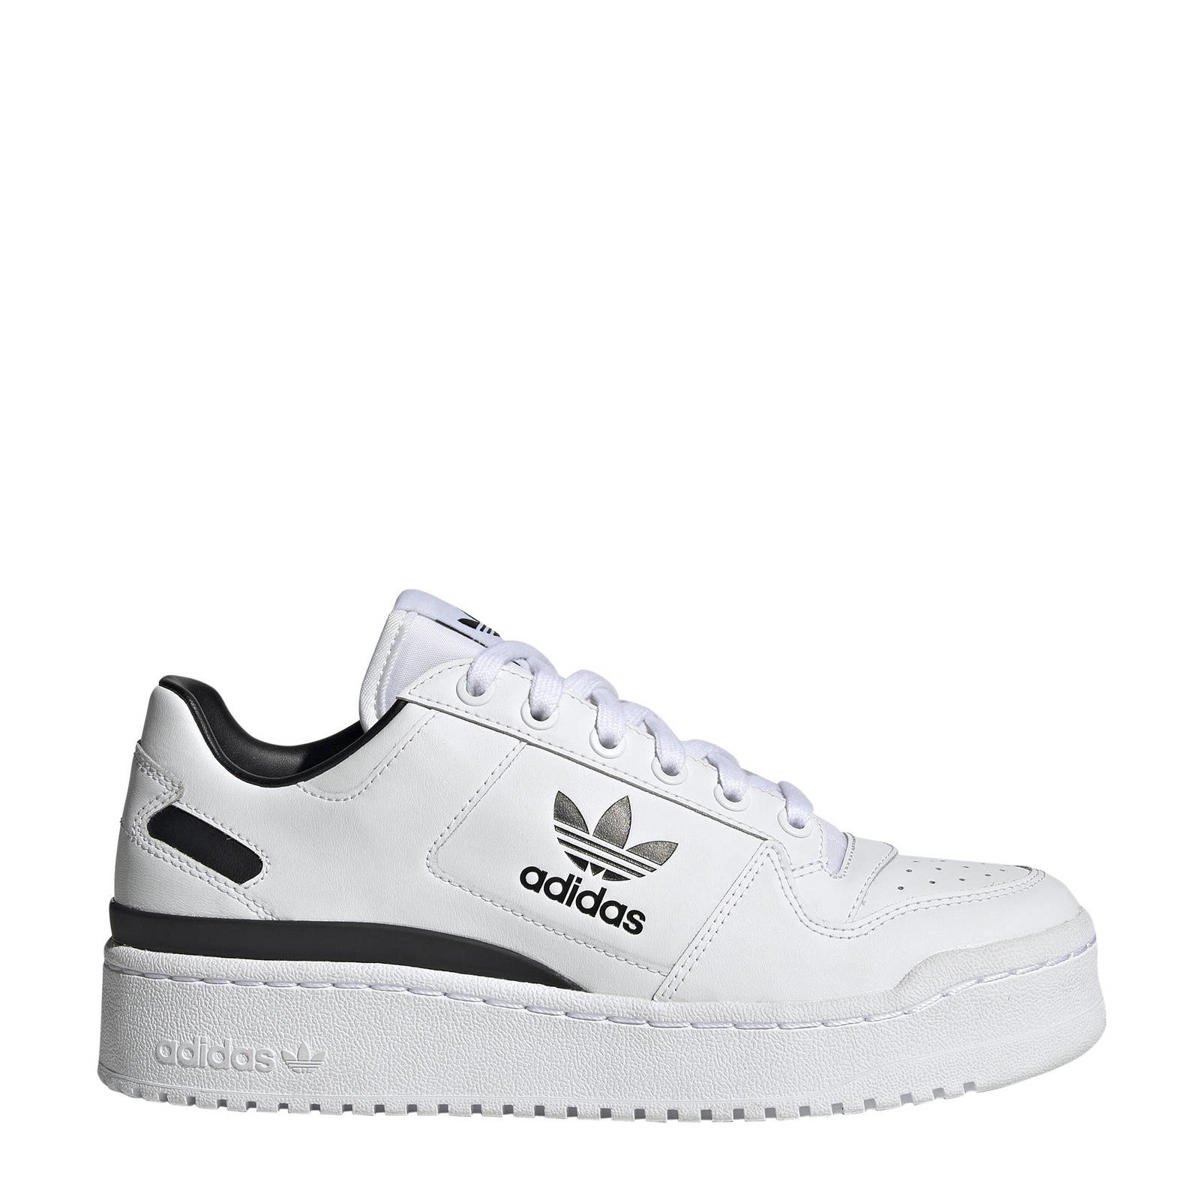 Overeenkomstig met plug Politieagent adidas Originals Forum Bold sneakers wit/zwart | wehkamp